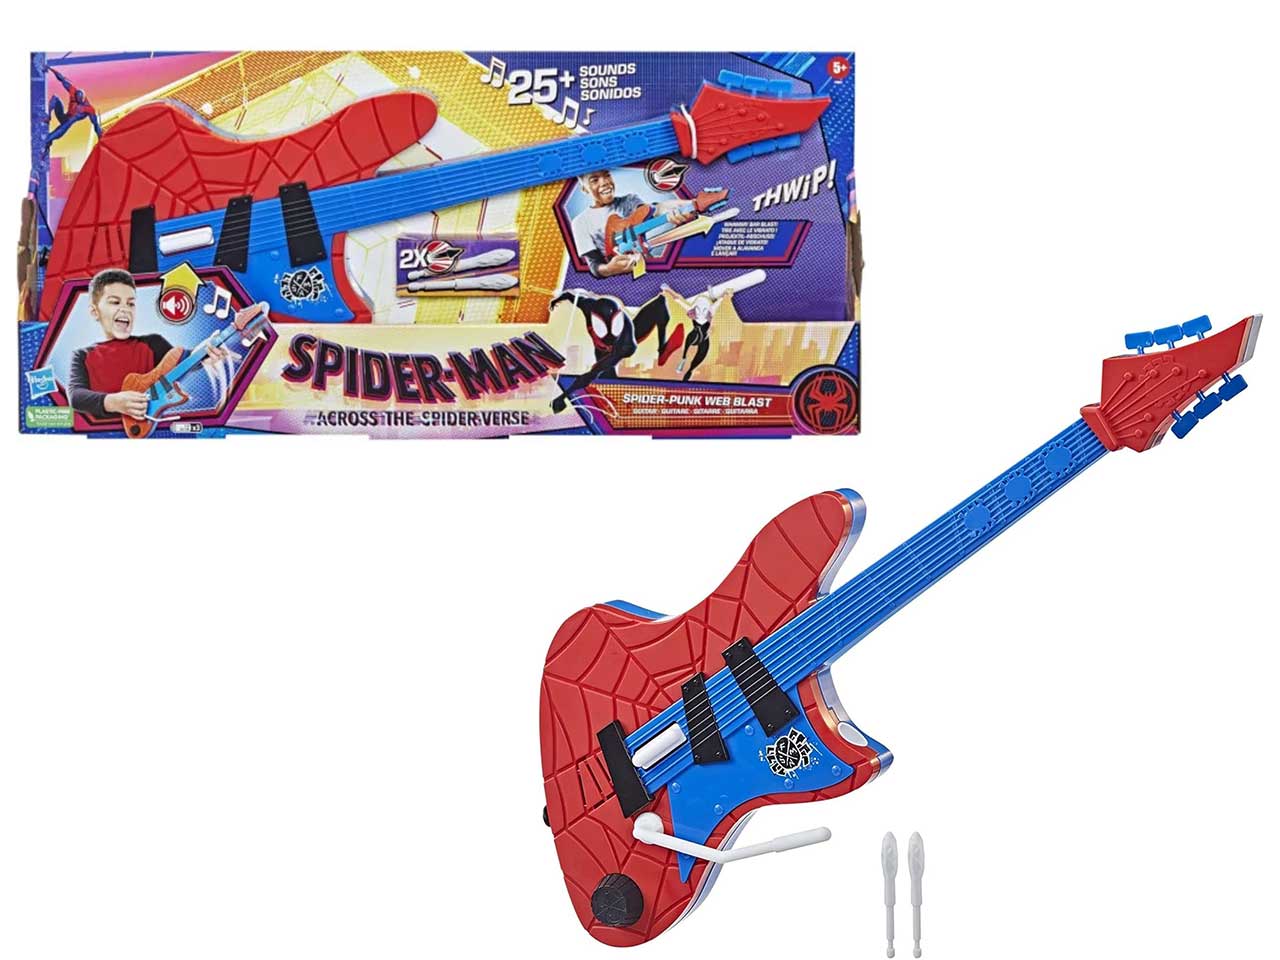 Spiderman chitarra elettronica con 25 suoni sparaproiettili per bambini dai 5+ anni, Marvel hasbro